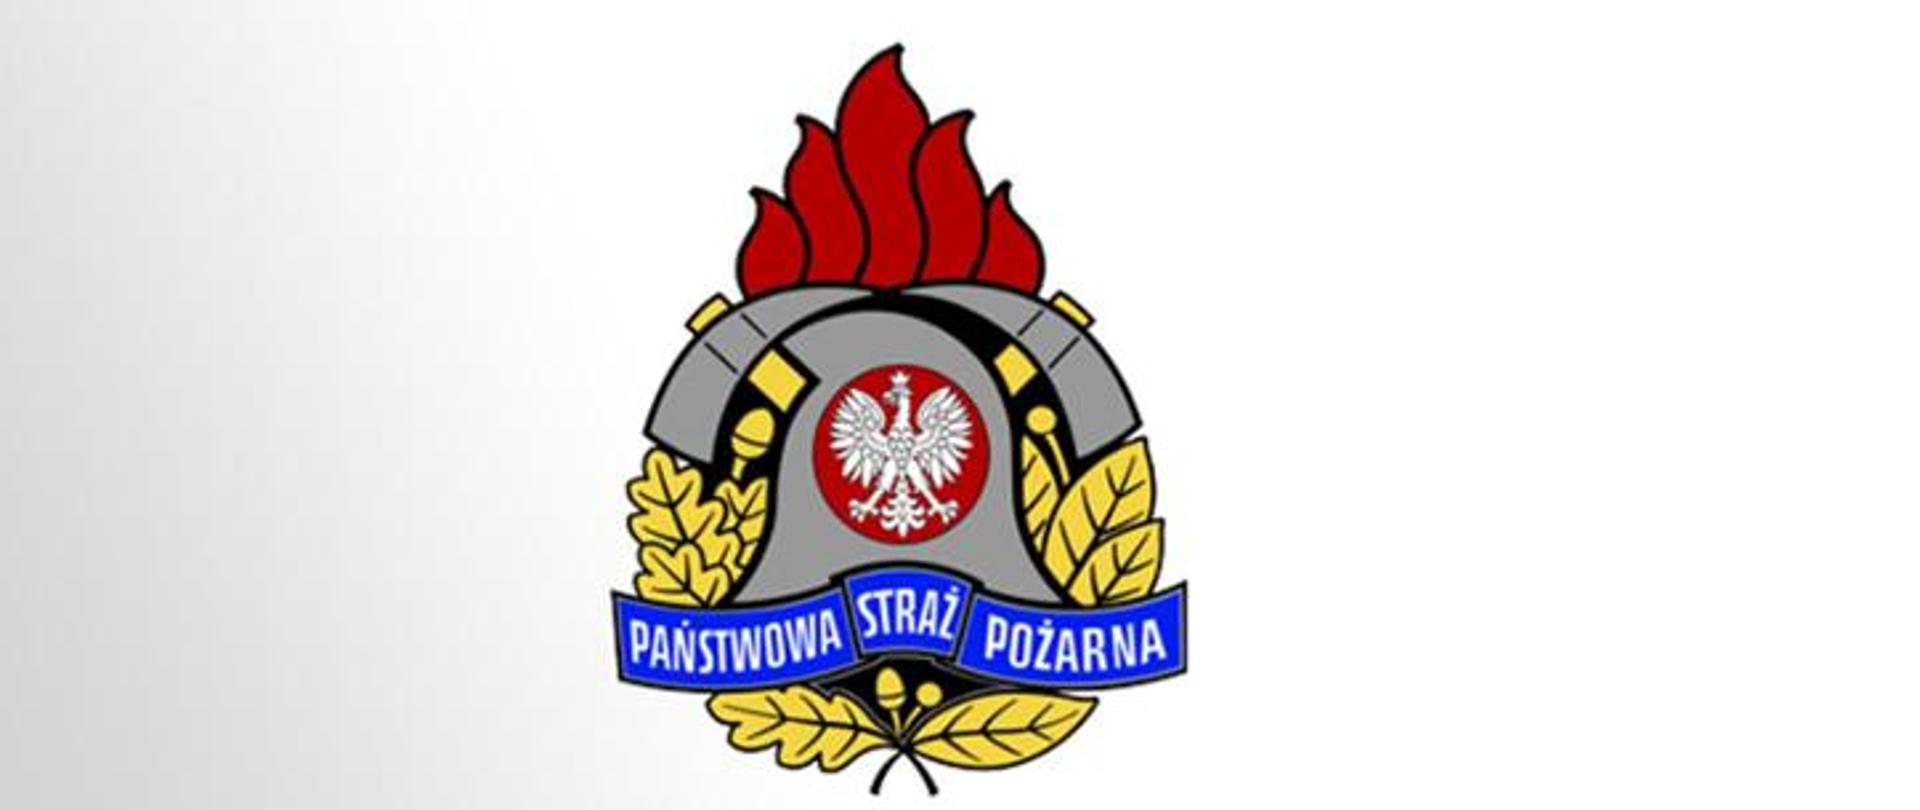 Zdjęcie przedstawia logo Państwowej Straży Pożarnej na tle, które w gradiencie przechodzi z koloru jasnoszarego od lewej strony do koloru białego w stronę prawą